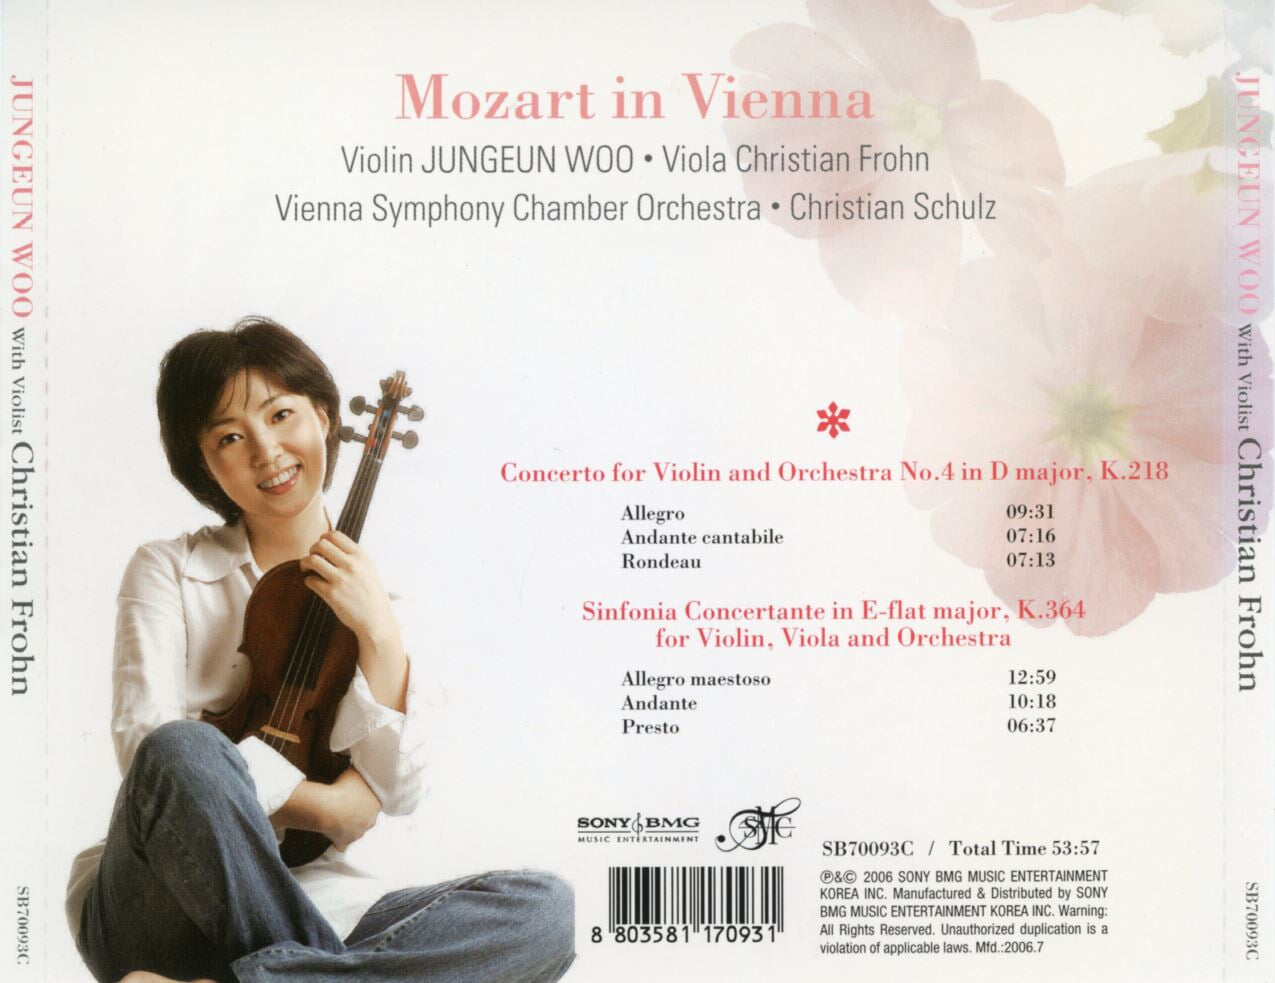 우정은 - Mozart Concerto for Violin and Orchestra No.4